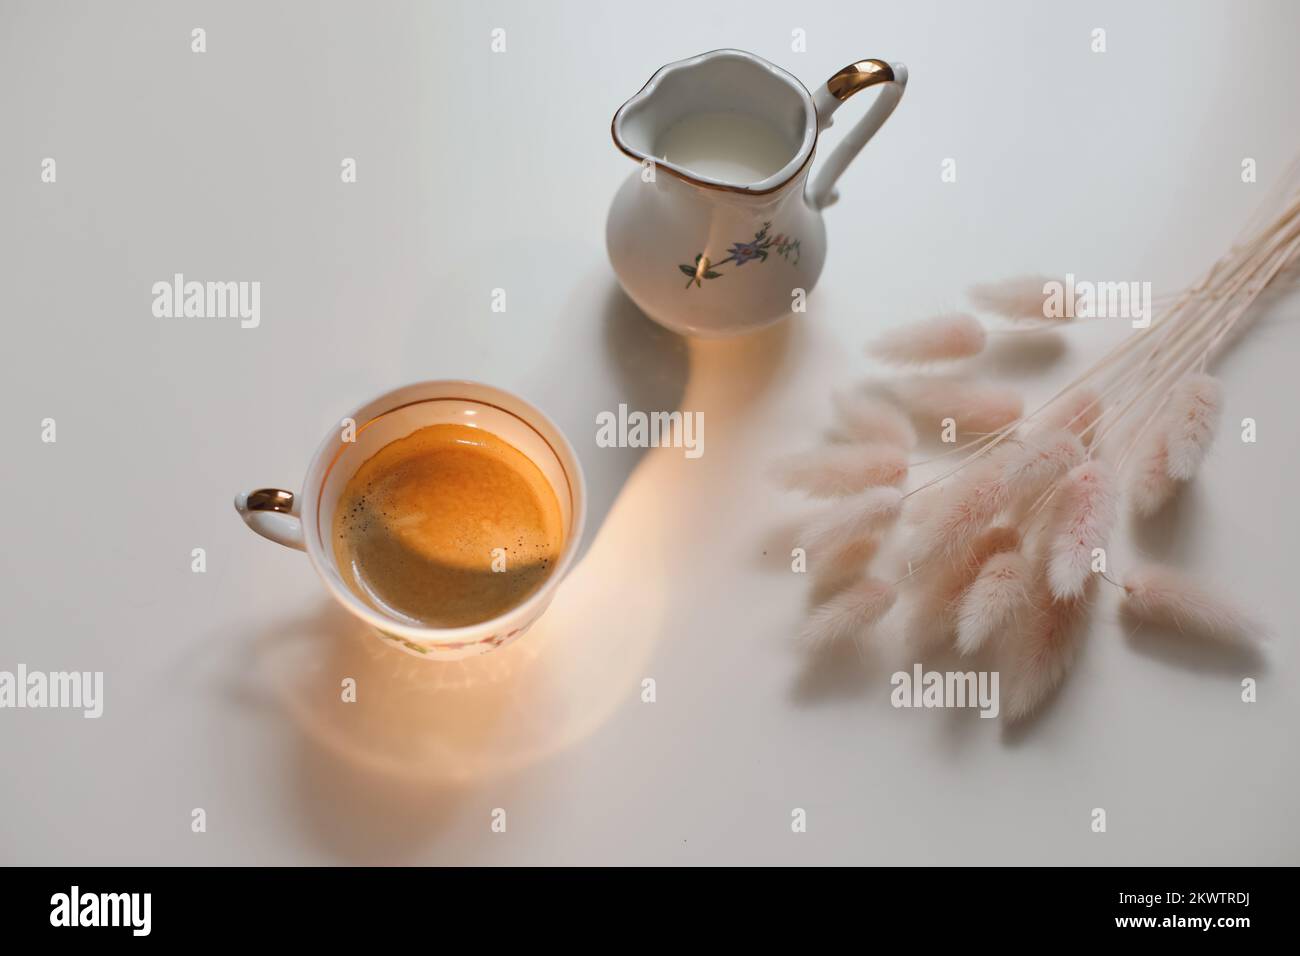 tazza con caraffa per caffè e latte su sfondo di legno bianco, primo piano. Colazione energetica, concetto di routine mattutina Foto Stock